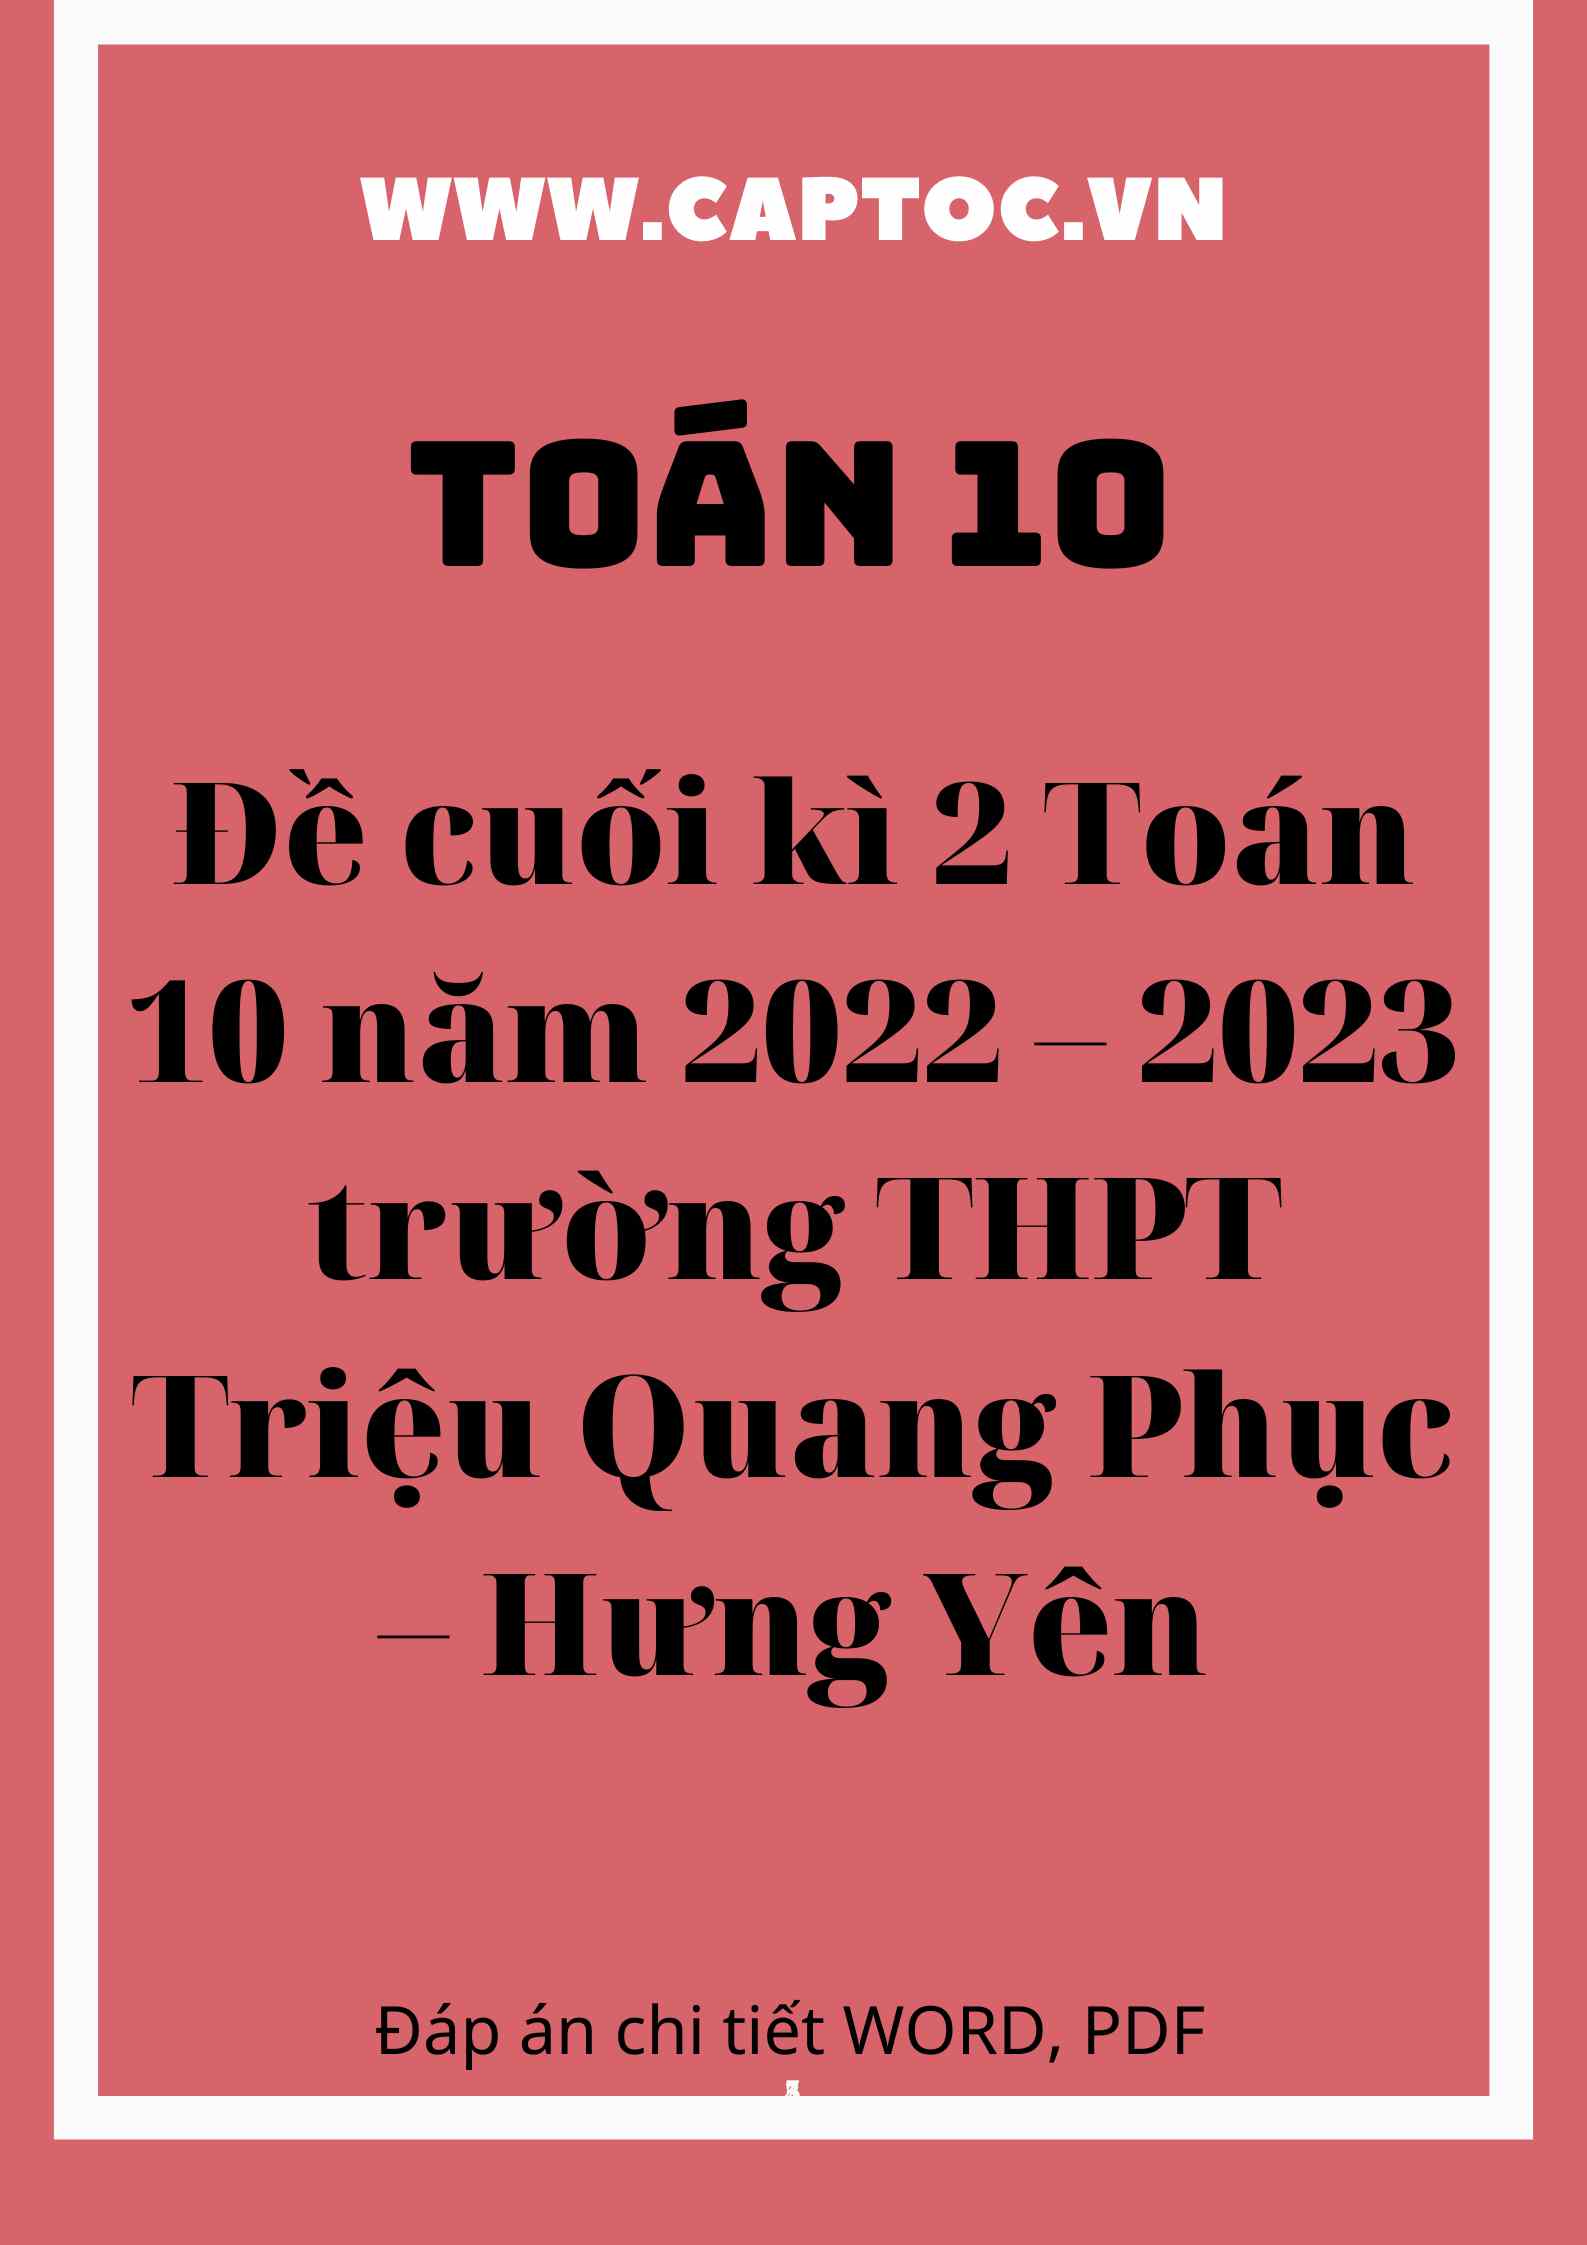 Đề cuối kì 2 Toán 10 năm 2022 – 2023 trường THPT Triệu Quang Phục – Hưng Yên